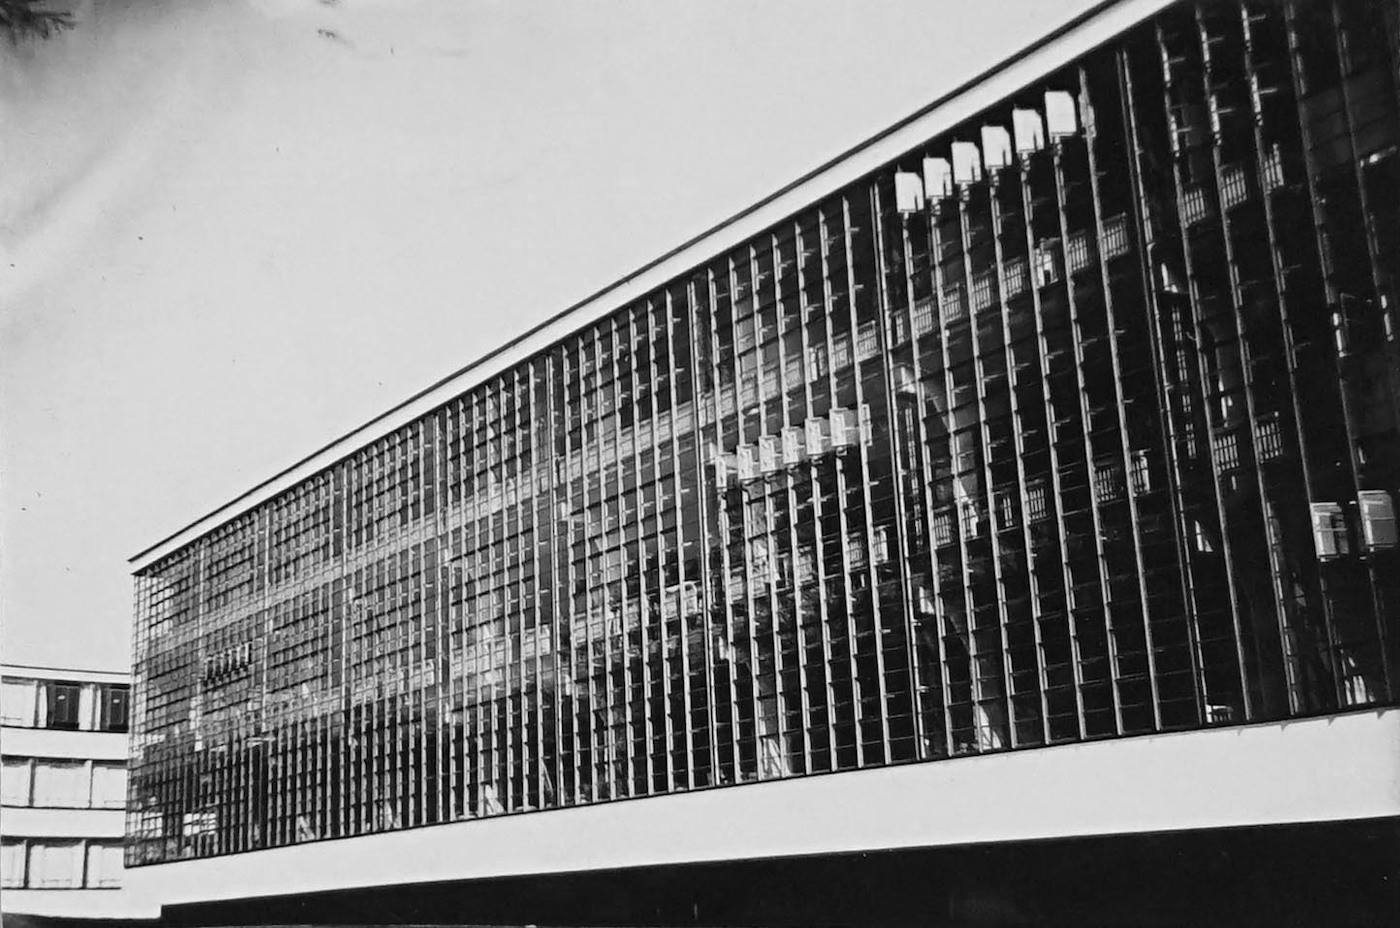 Bauhaus Workshop Wing